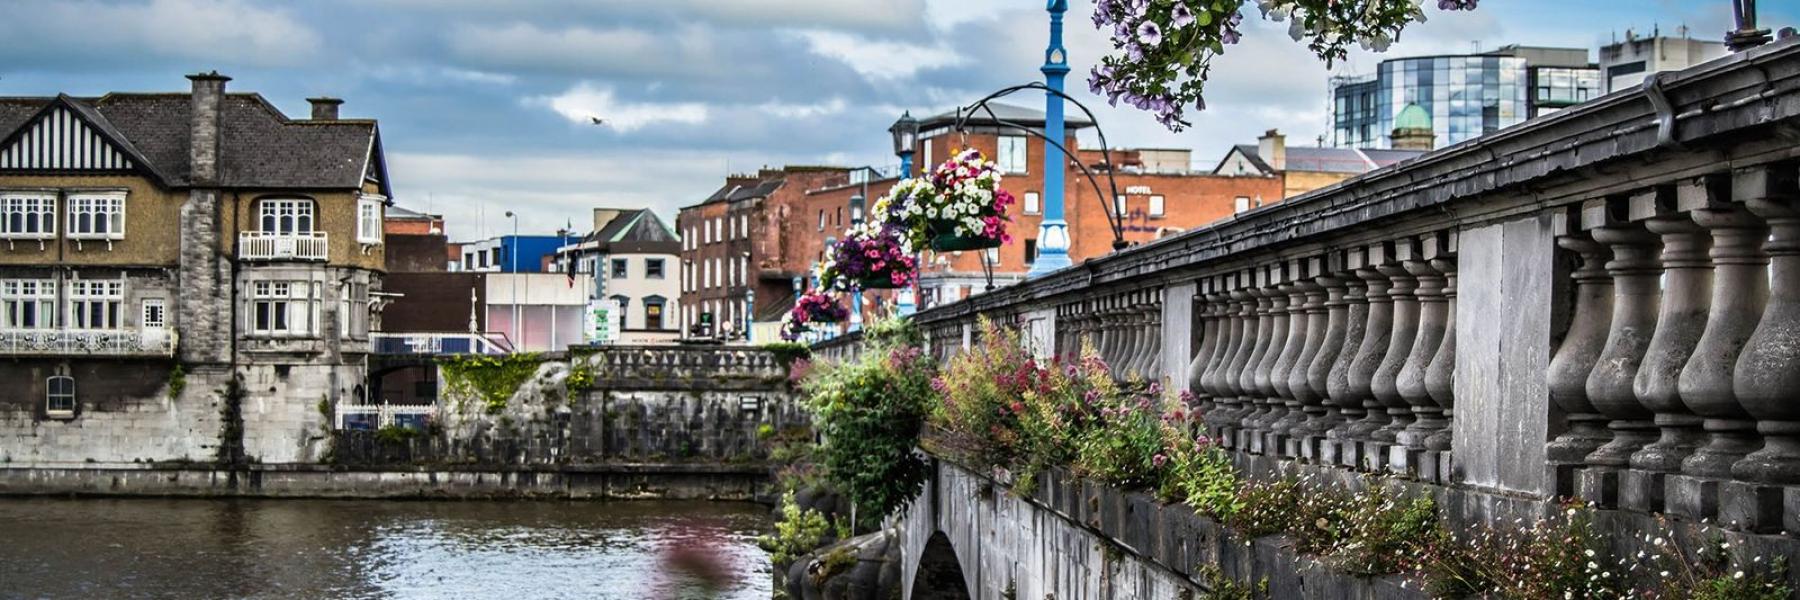 هيئة السياحة الأيرلندية تروّج لأيرلندا بلعبة البازل وتركيب صور أجمل وجهات أيرلندا